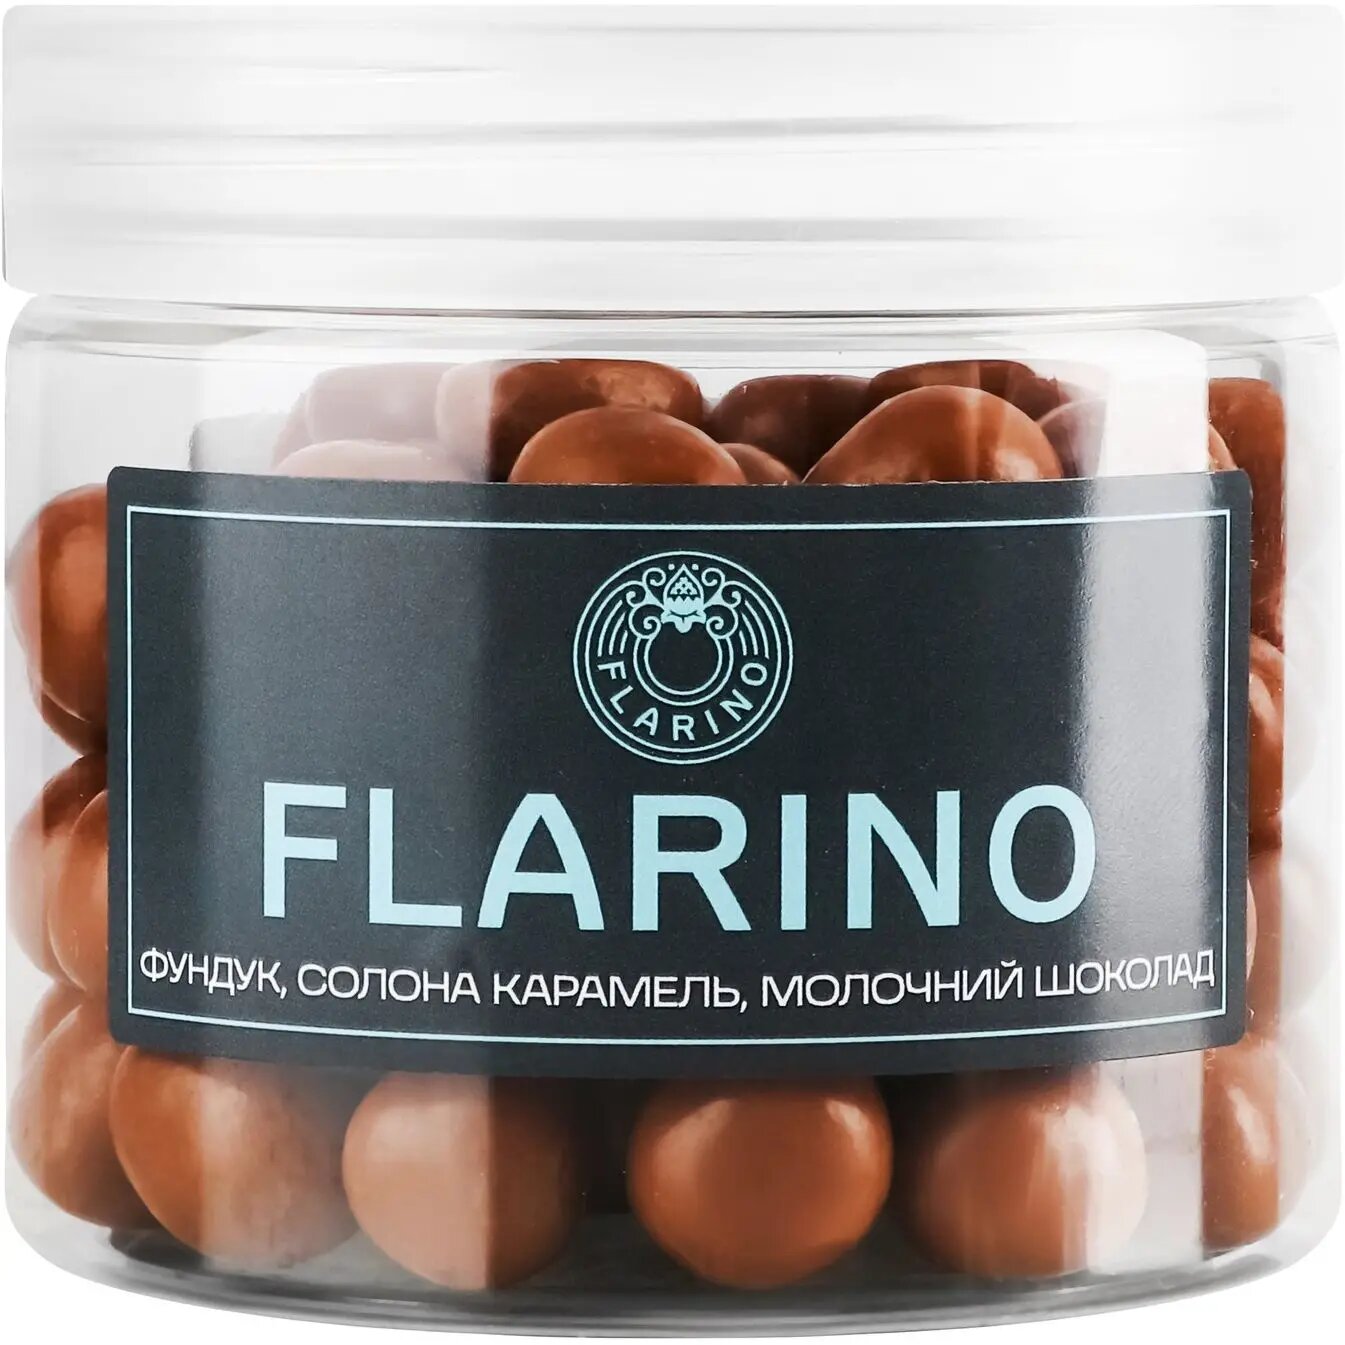 Фундук Flarino в соленой карамели покрытый молочным шоколадом 180 г (924017) - фото 1